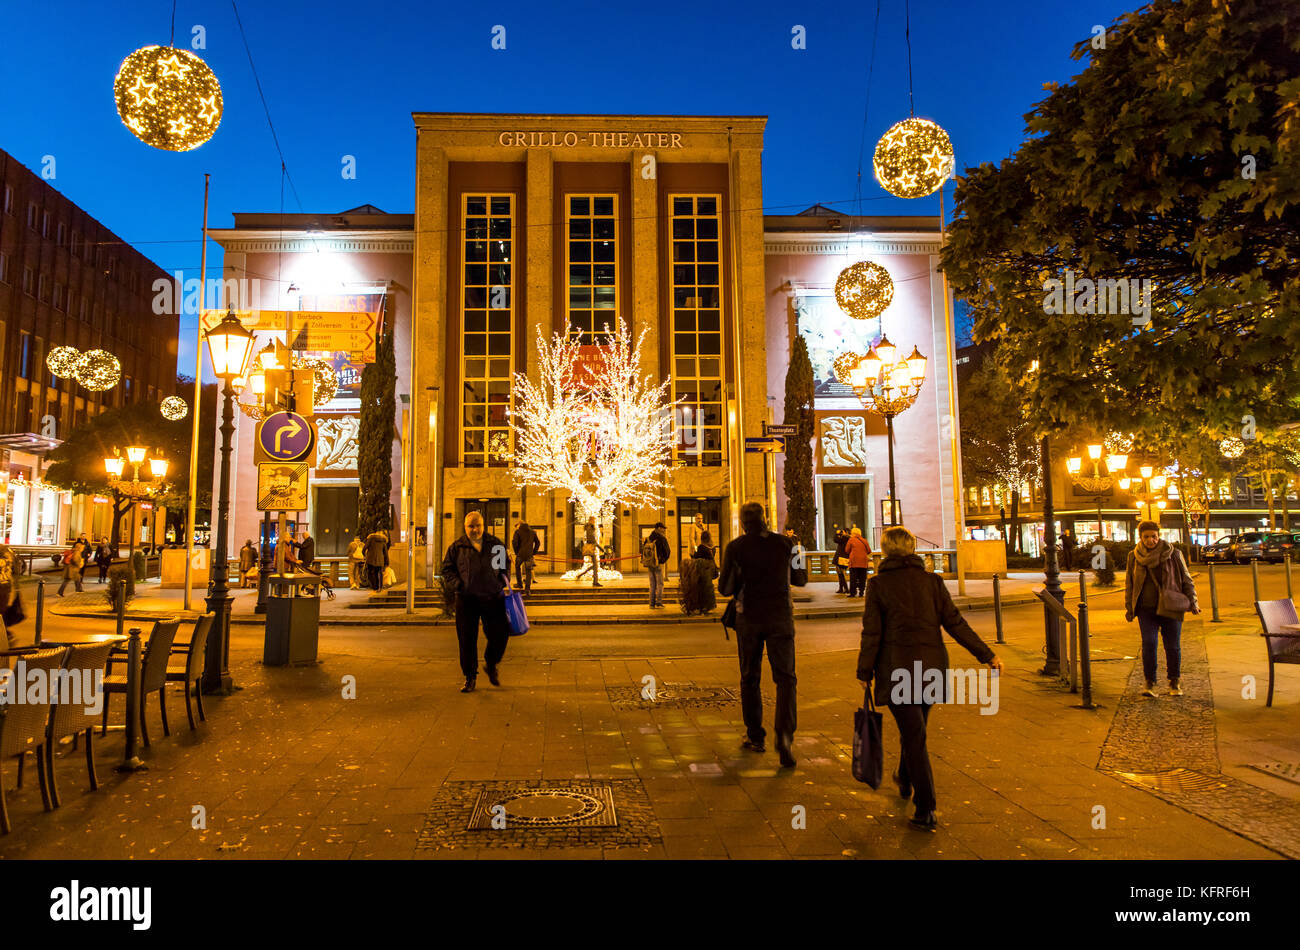 Ilumina la fachada del edificio del teatro grillo, Essen, Alemania, durante el festival de luz de Essen, Foto de stock